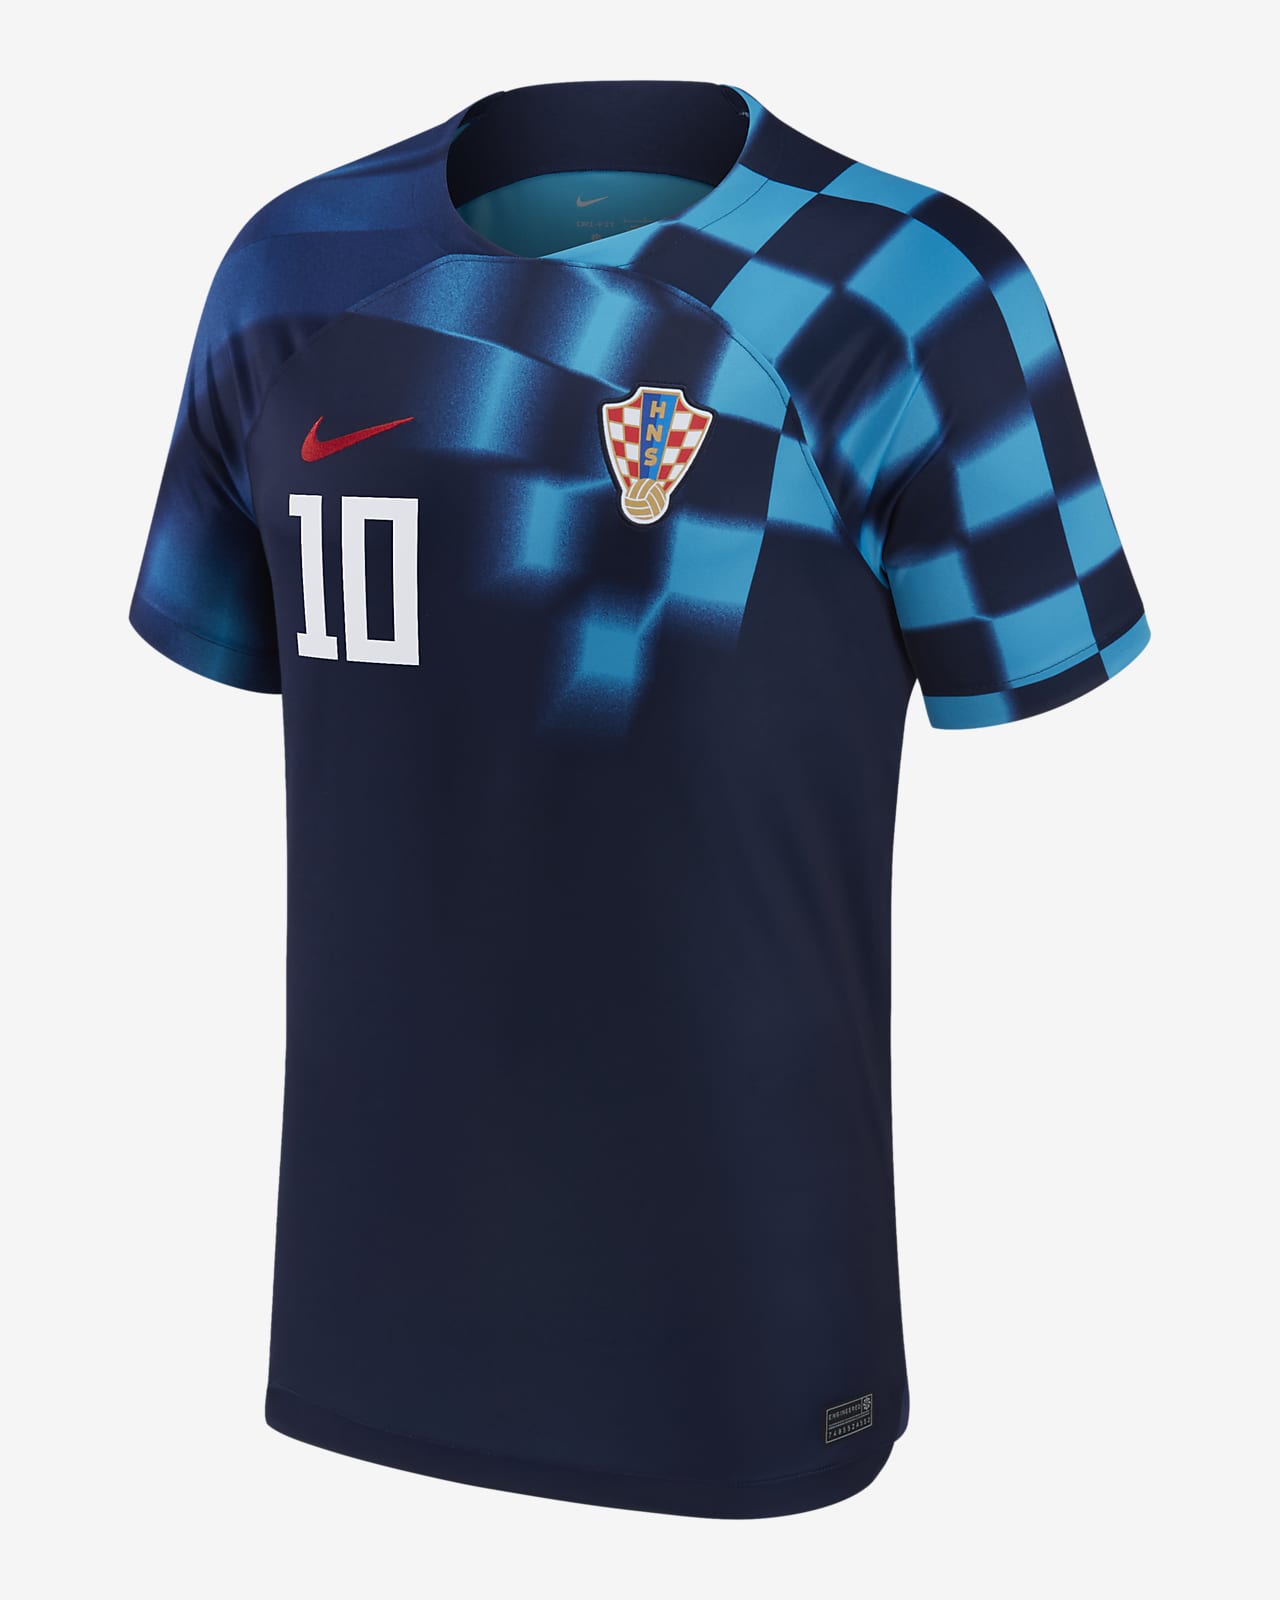 croatia football team kit